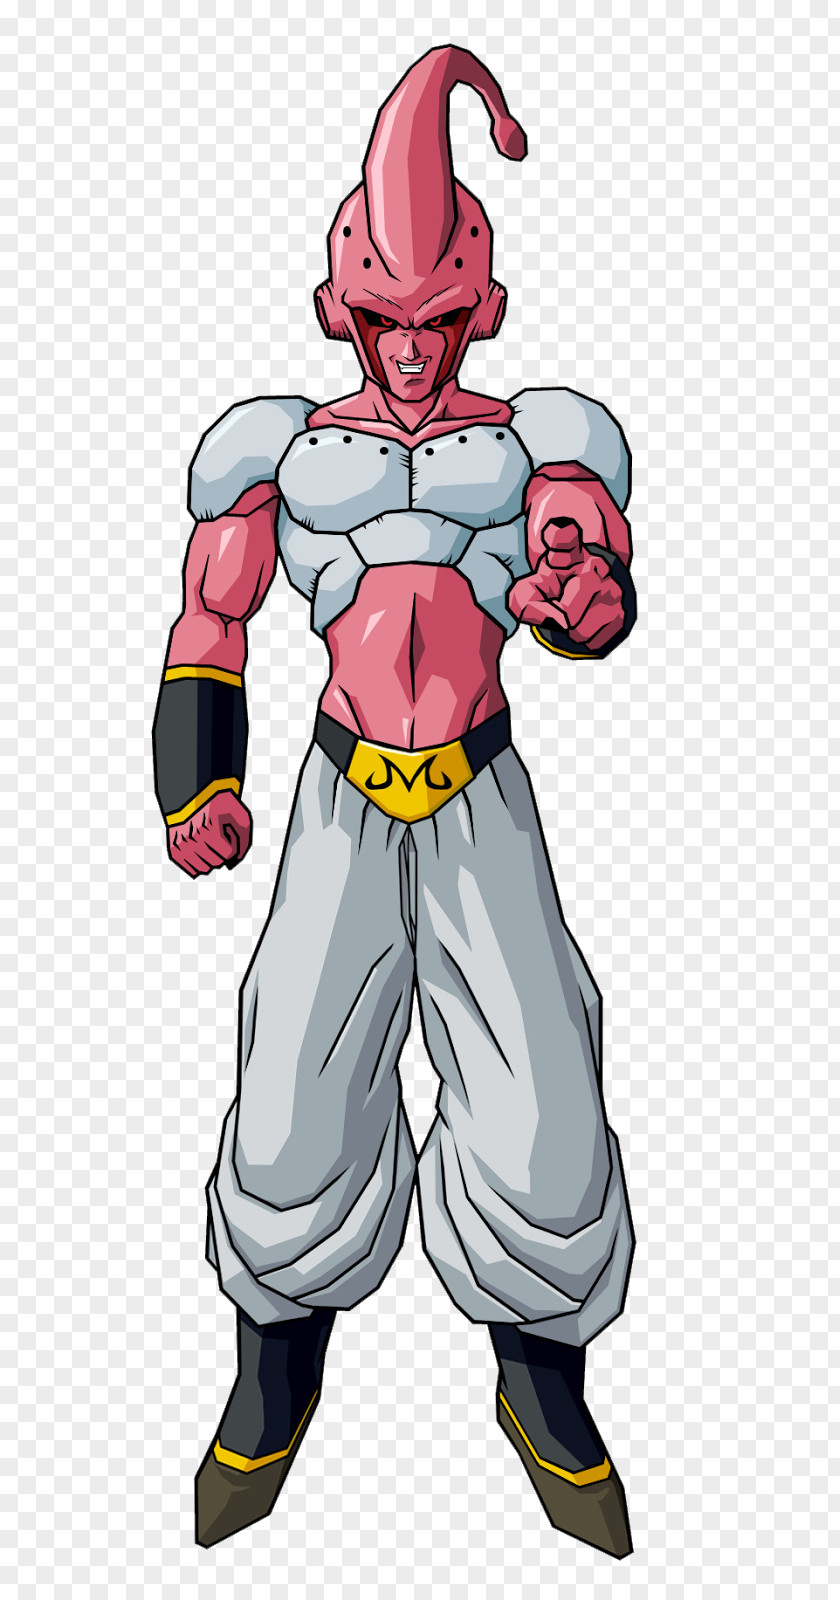 Goku Majin Buu Trunks Piccolo Frieza Vegeta PNG